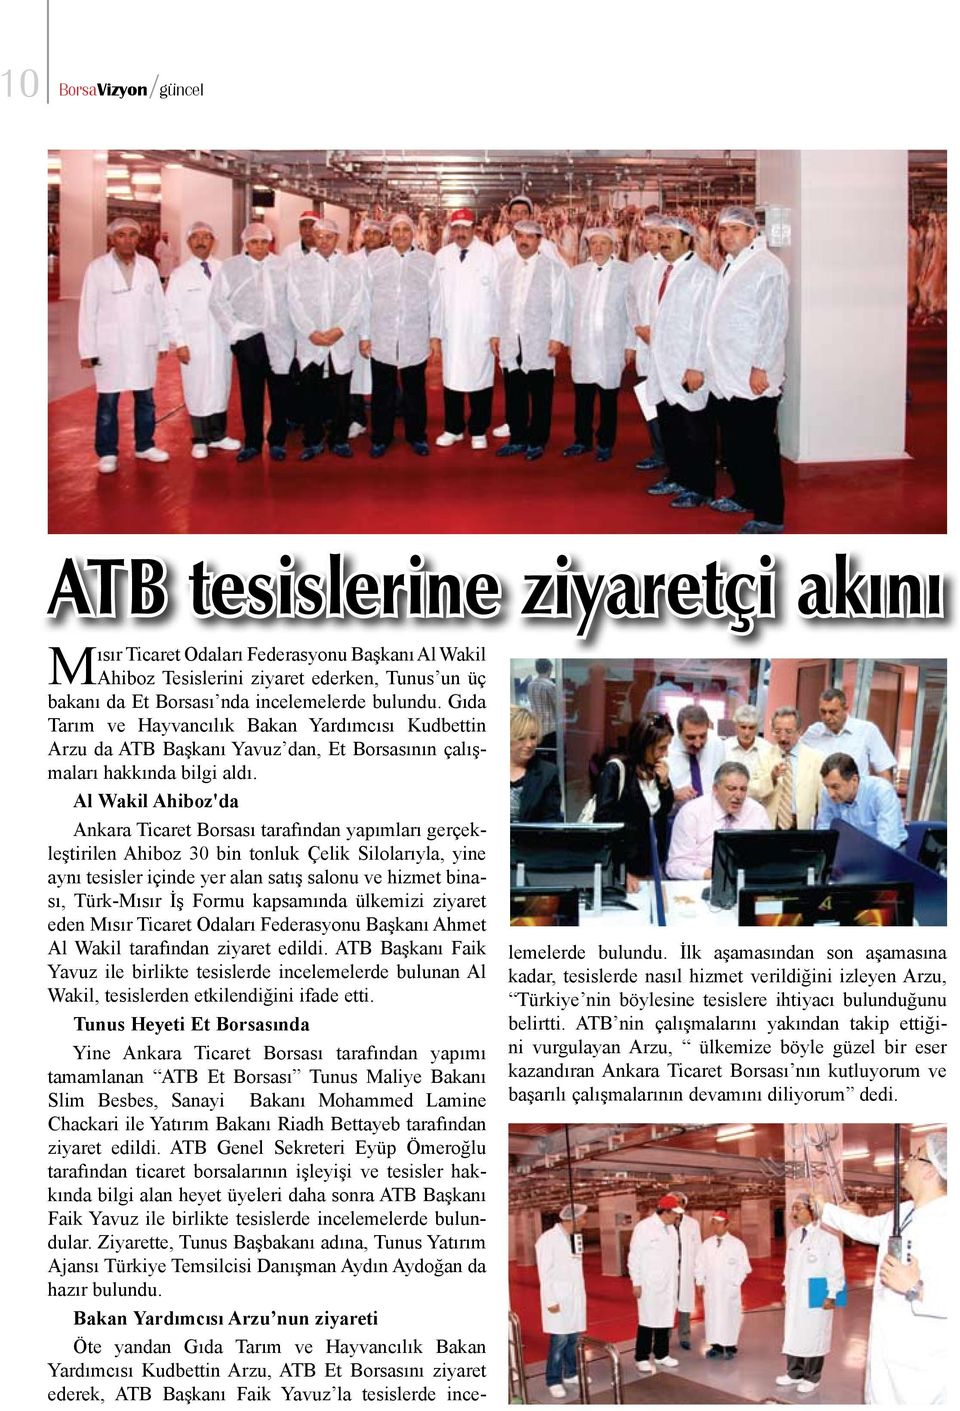 Al Wakil Ahiboz'da Ankara Ticaret Borsası tarafından yapımları gerçekleştirilen Ahiboz 30 bin tonluk Çelik Silolarıyla, yine aynı tesisler içinde yer alan satış salonu ve hizmet binası, Türk-Mısır İş